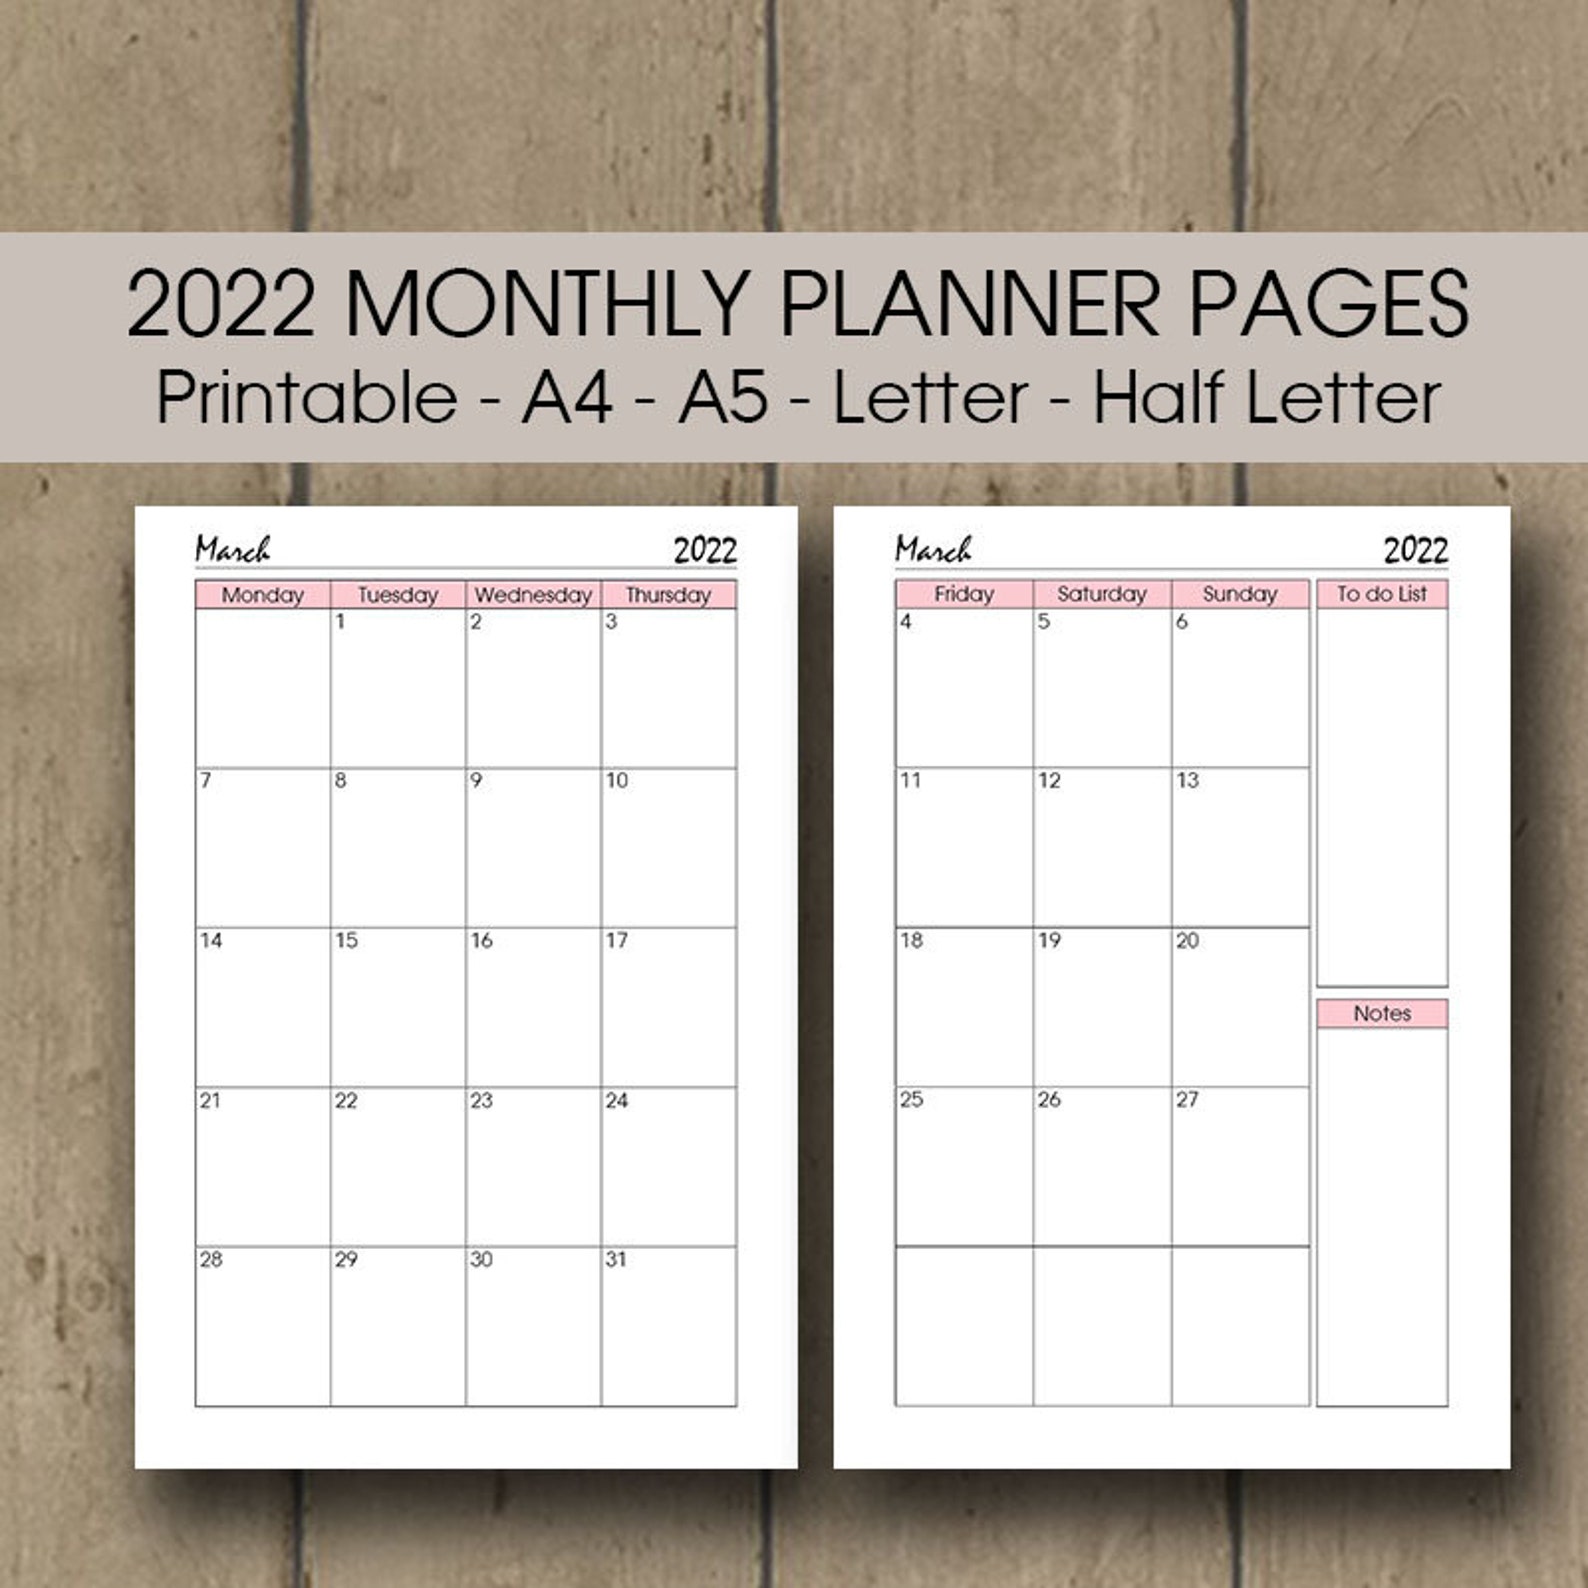 2022 2022 Weekly Panner Calendar Printable